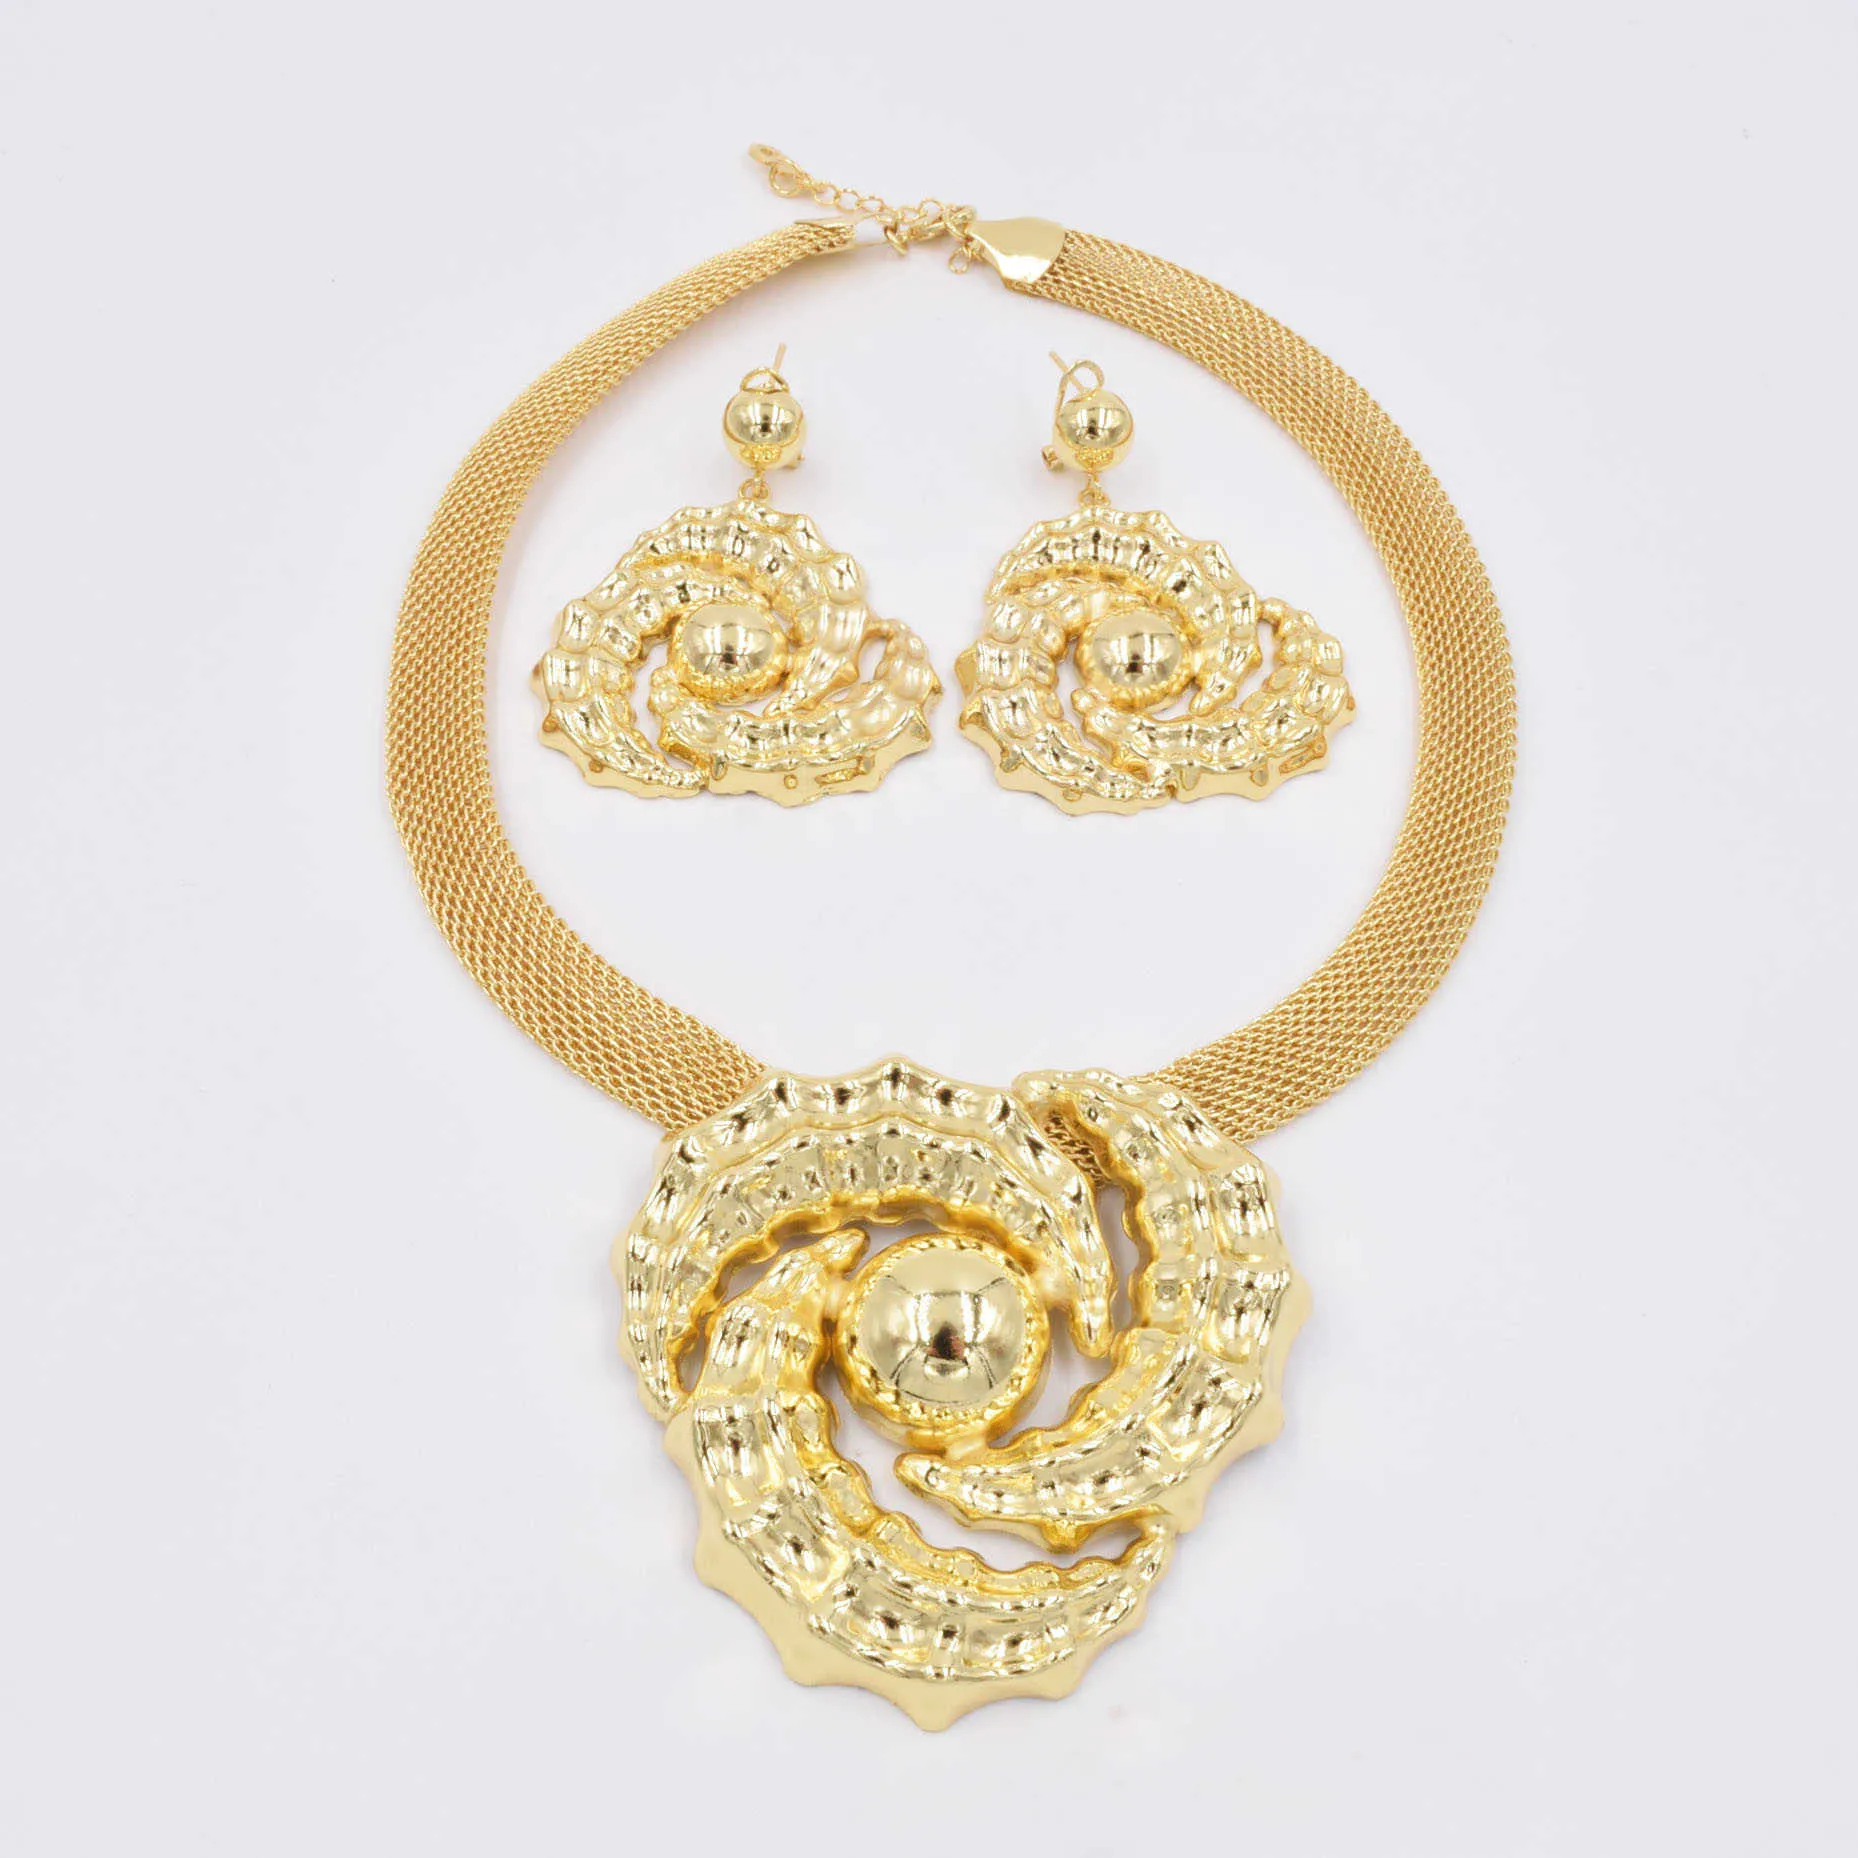 Högkvalitativ LTALY 750 Guldfärgsmycken Set för kvinnliga afrikanska pärlor Juveler Fashion Halsband Set Earring Jewelry 2106198918534